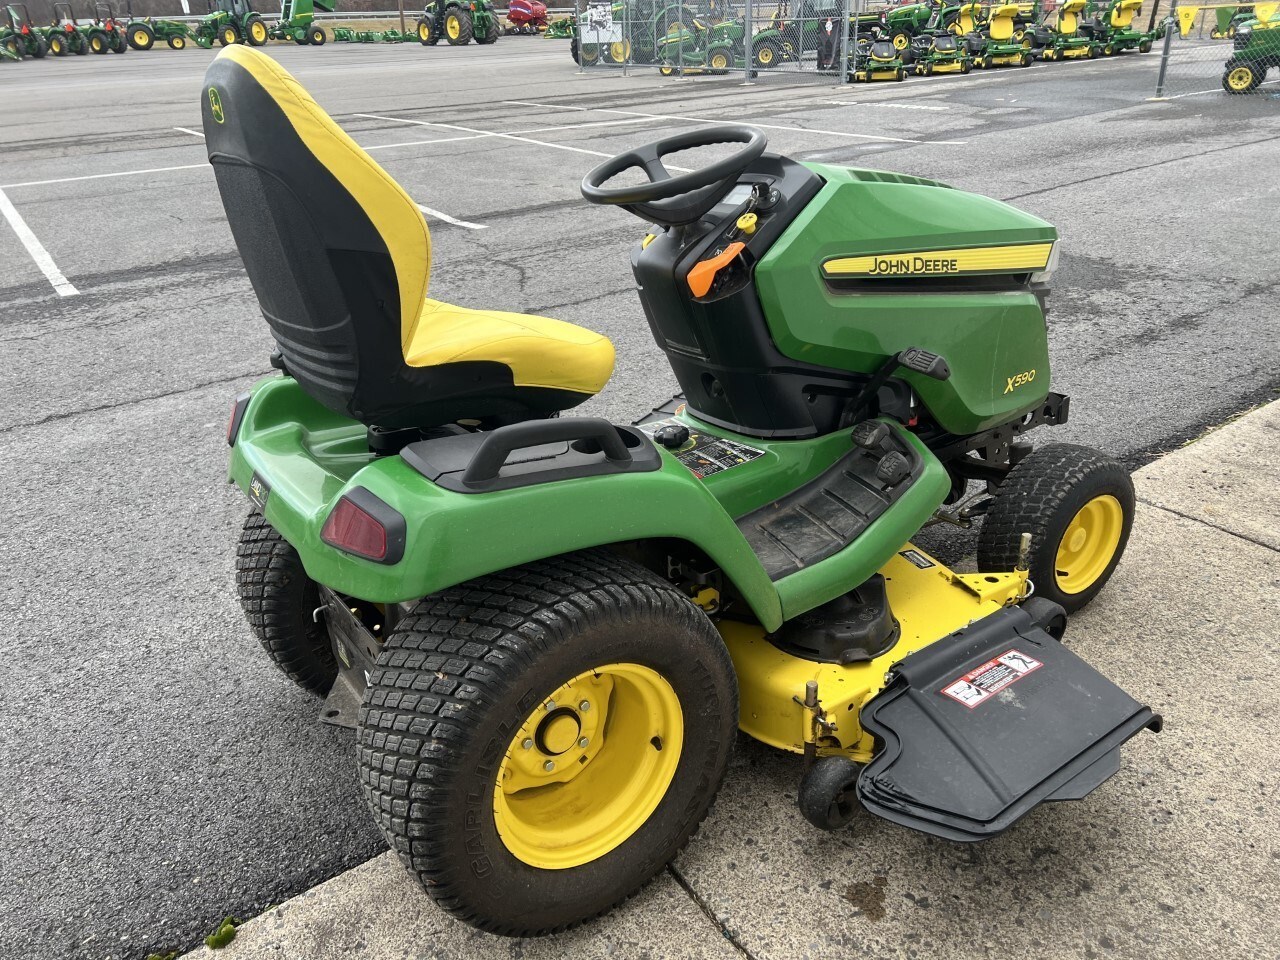 2021 John Deere X590 Lawn Mower For Sale